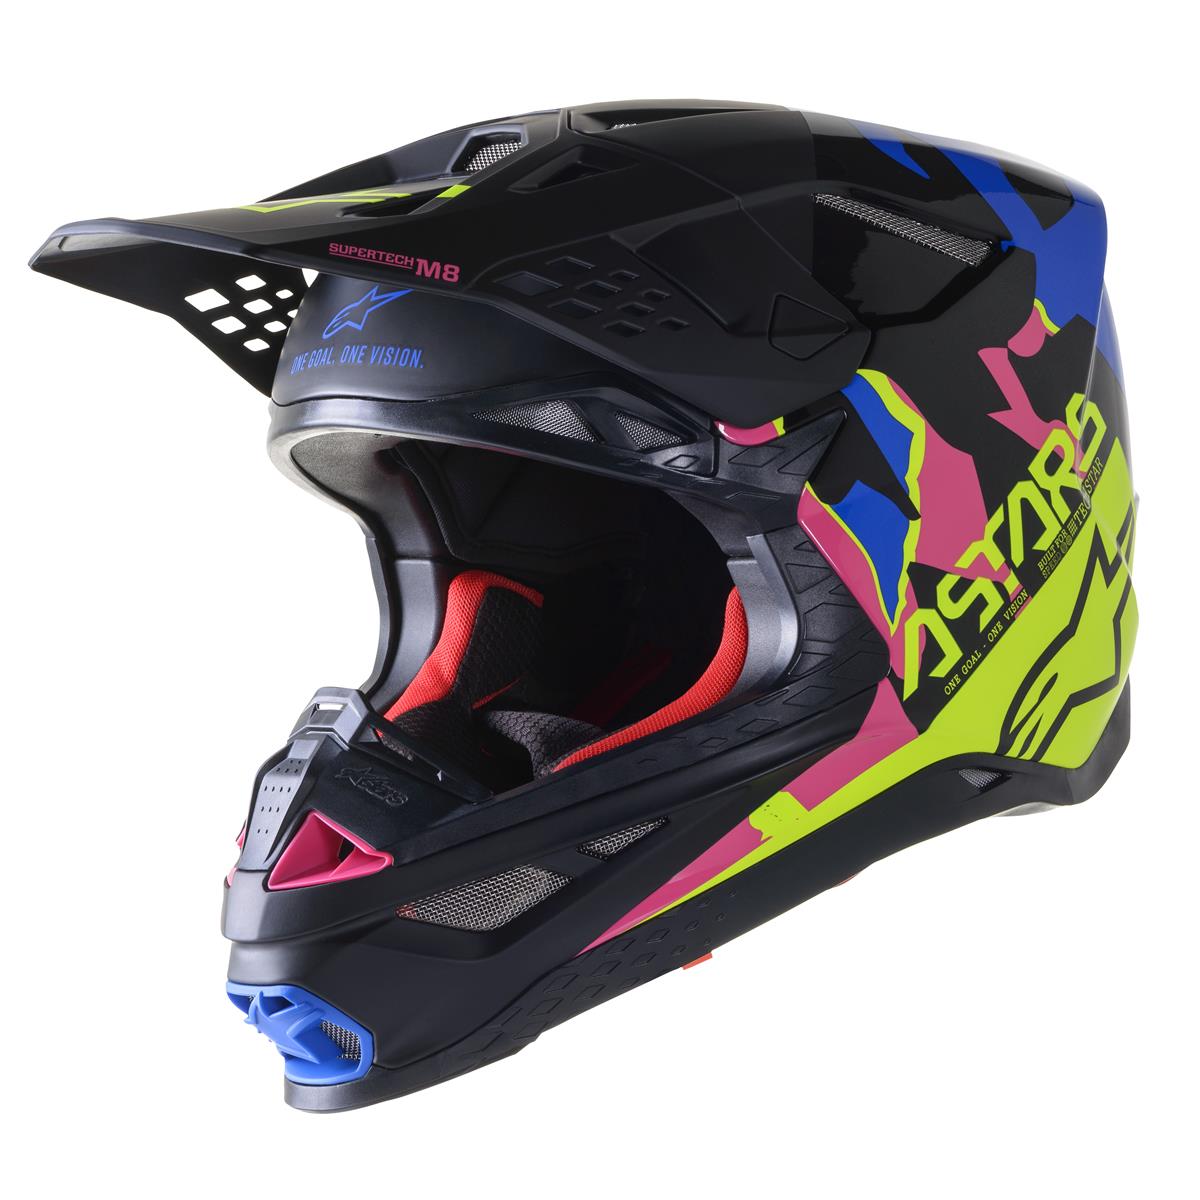 Alpinestars Motocross-Helm Supertech S-M8 Echo - Schwarz/Blau/Gelb/Neonpink